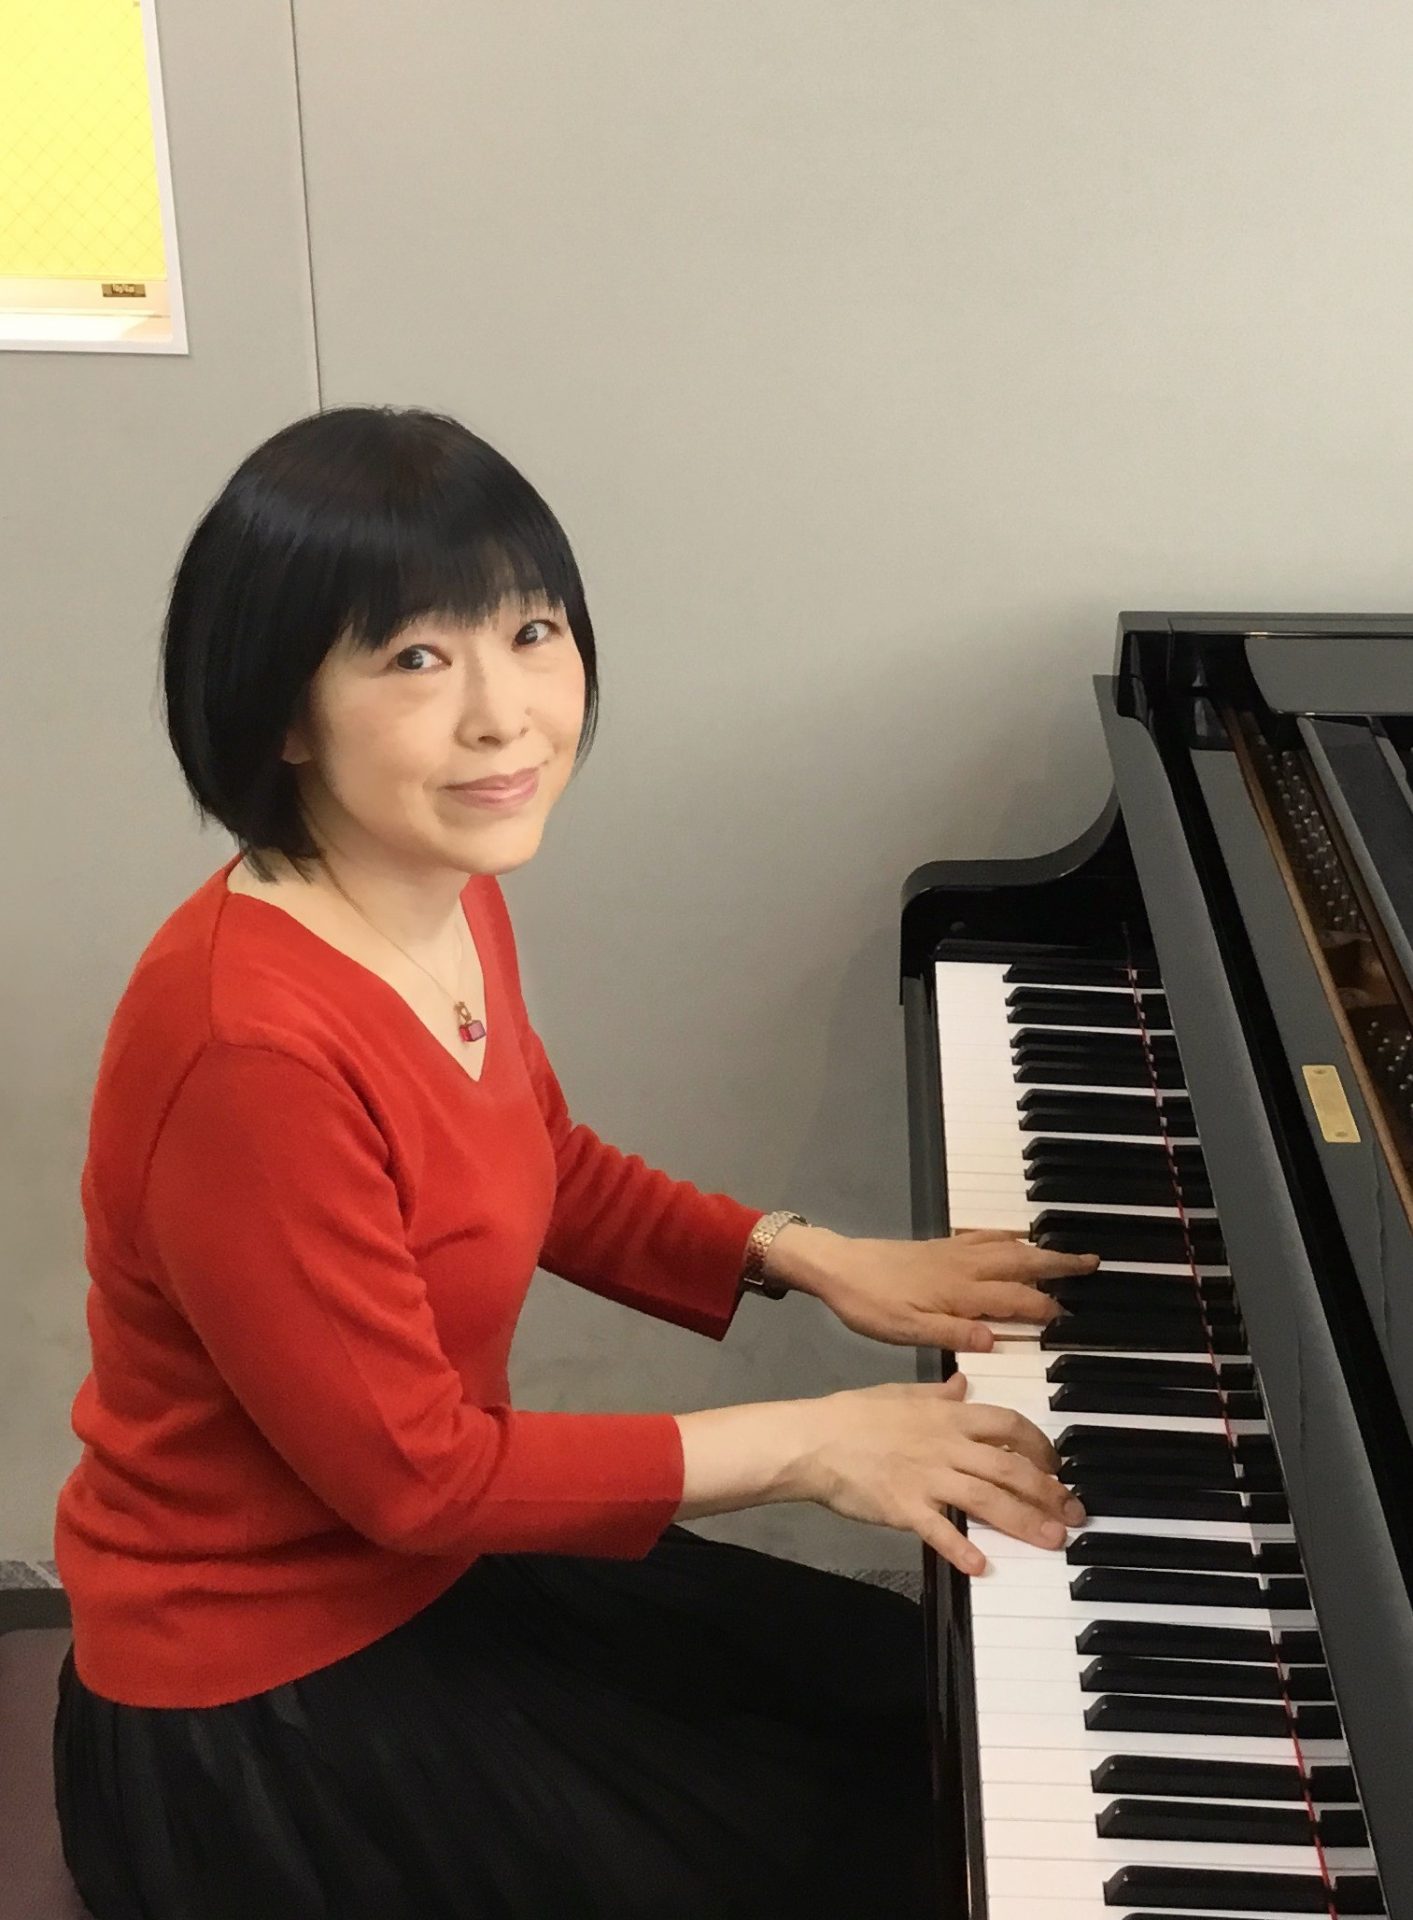 CONTENTS講師プロフィールコース概要講師プロフィール 東京音楽大学ピアノ科卒業。 作曲活動、バンド活動と仕事以外でも音楽に囲まれて生活しています。より多くのより幅広い年齢の方にピアノの楽しさを知っていただけるよう、楽しいレッスンを致します。 講師へのインタビュー Q1、先生は何歳から楽器を始め […]